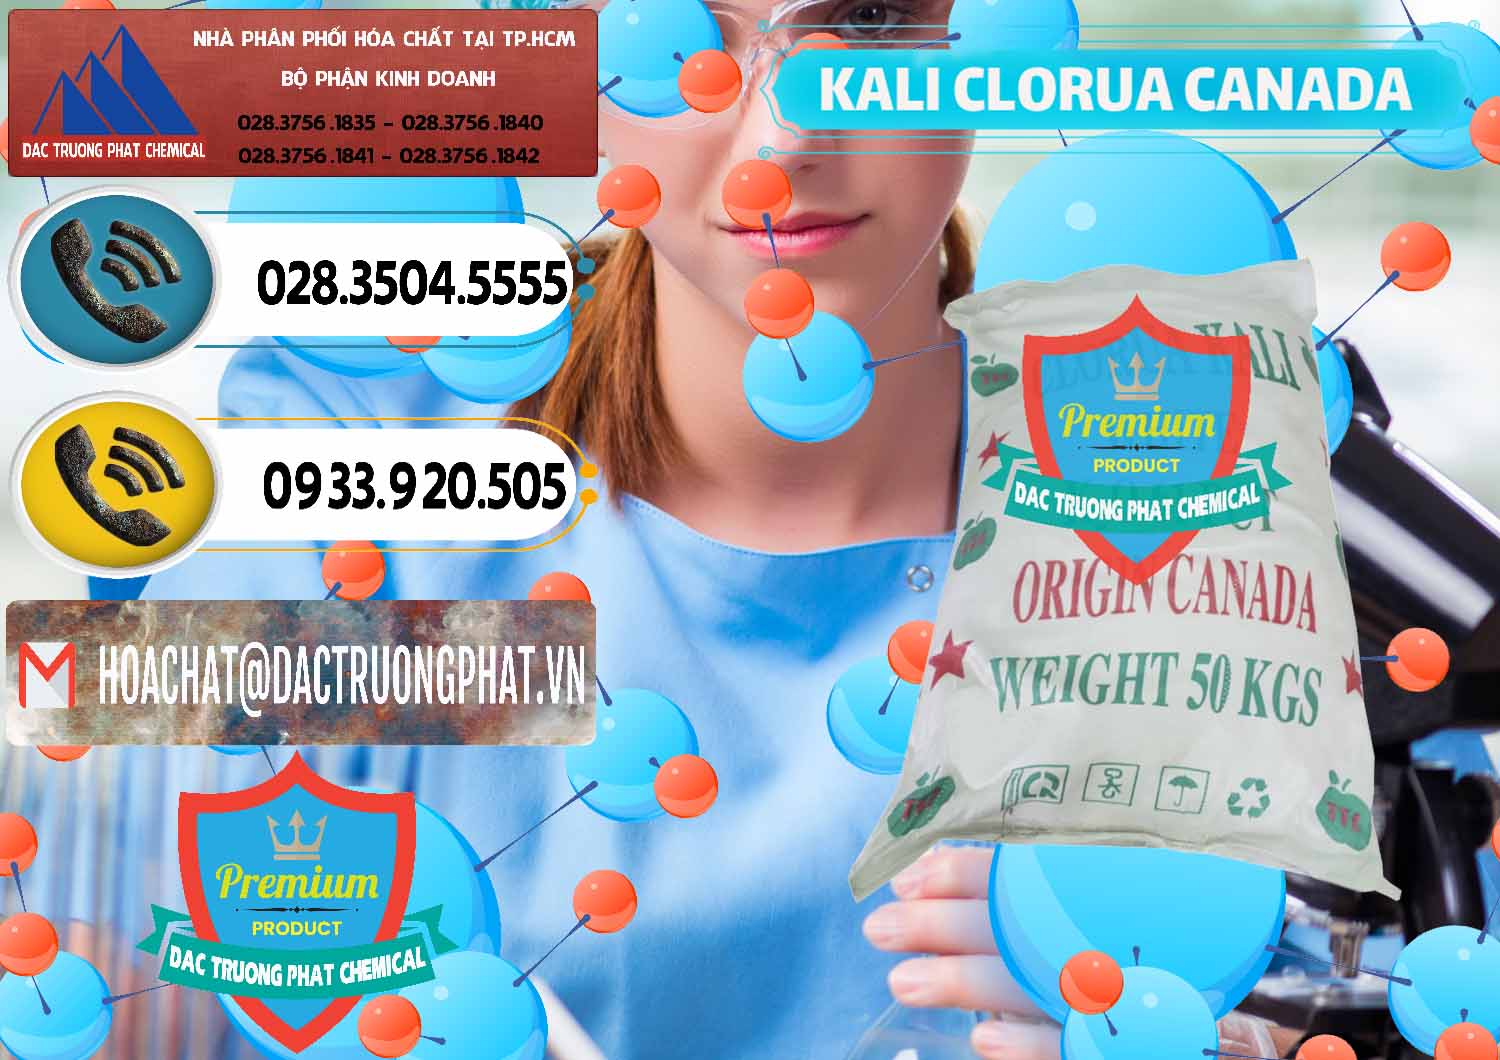 Nơi chuyên bán và cung cấp KCL – Kali Clorua Trắng Canada - 0437 - Công ty chuyên nhập khẩu - phân phối hóa chất tại TP.HCM - hoachatdetnhuom.vn